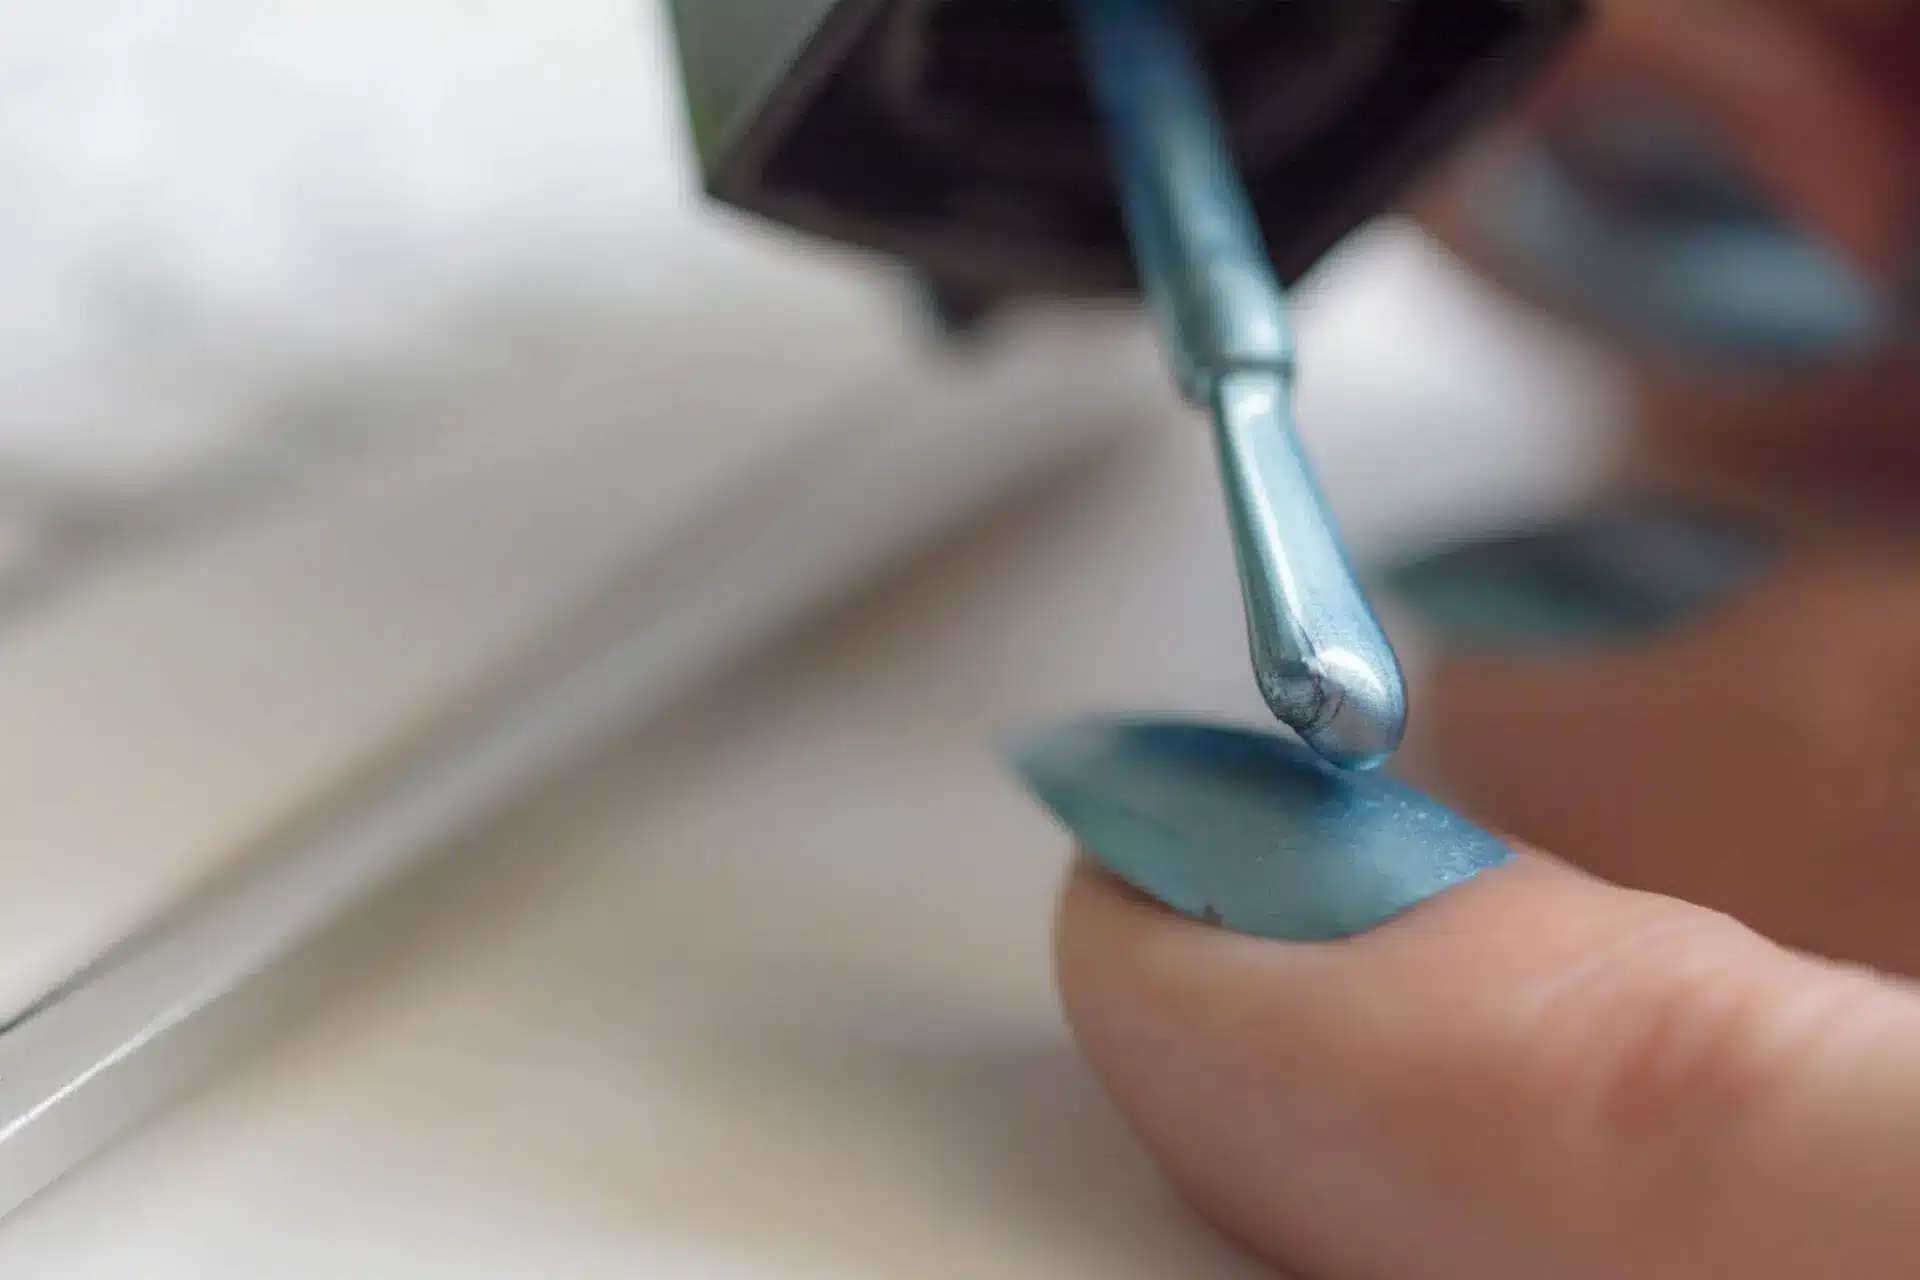 सूखी Nail Paint दोबारा नए जैसा बनाने के लिए आजमाएं ये आसान हैक्स - try  these easy hacks to make dry nail paint look like new again-mobile